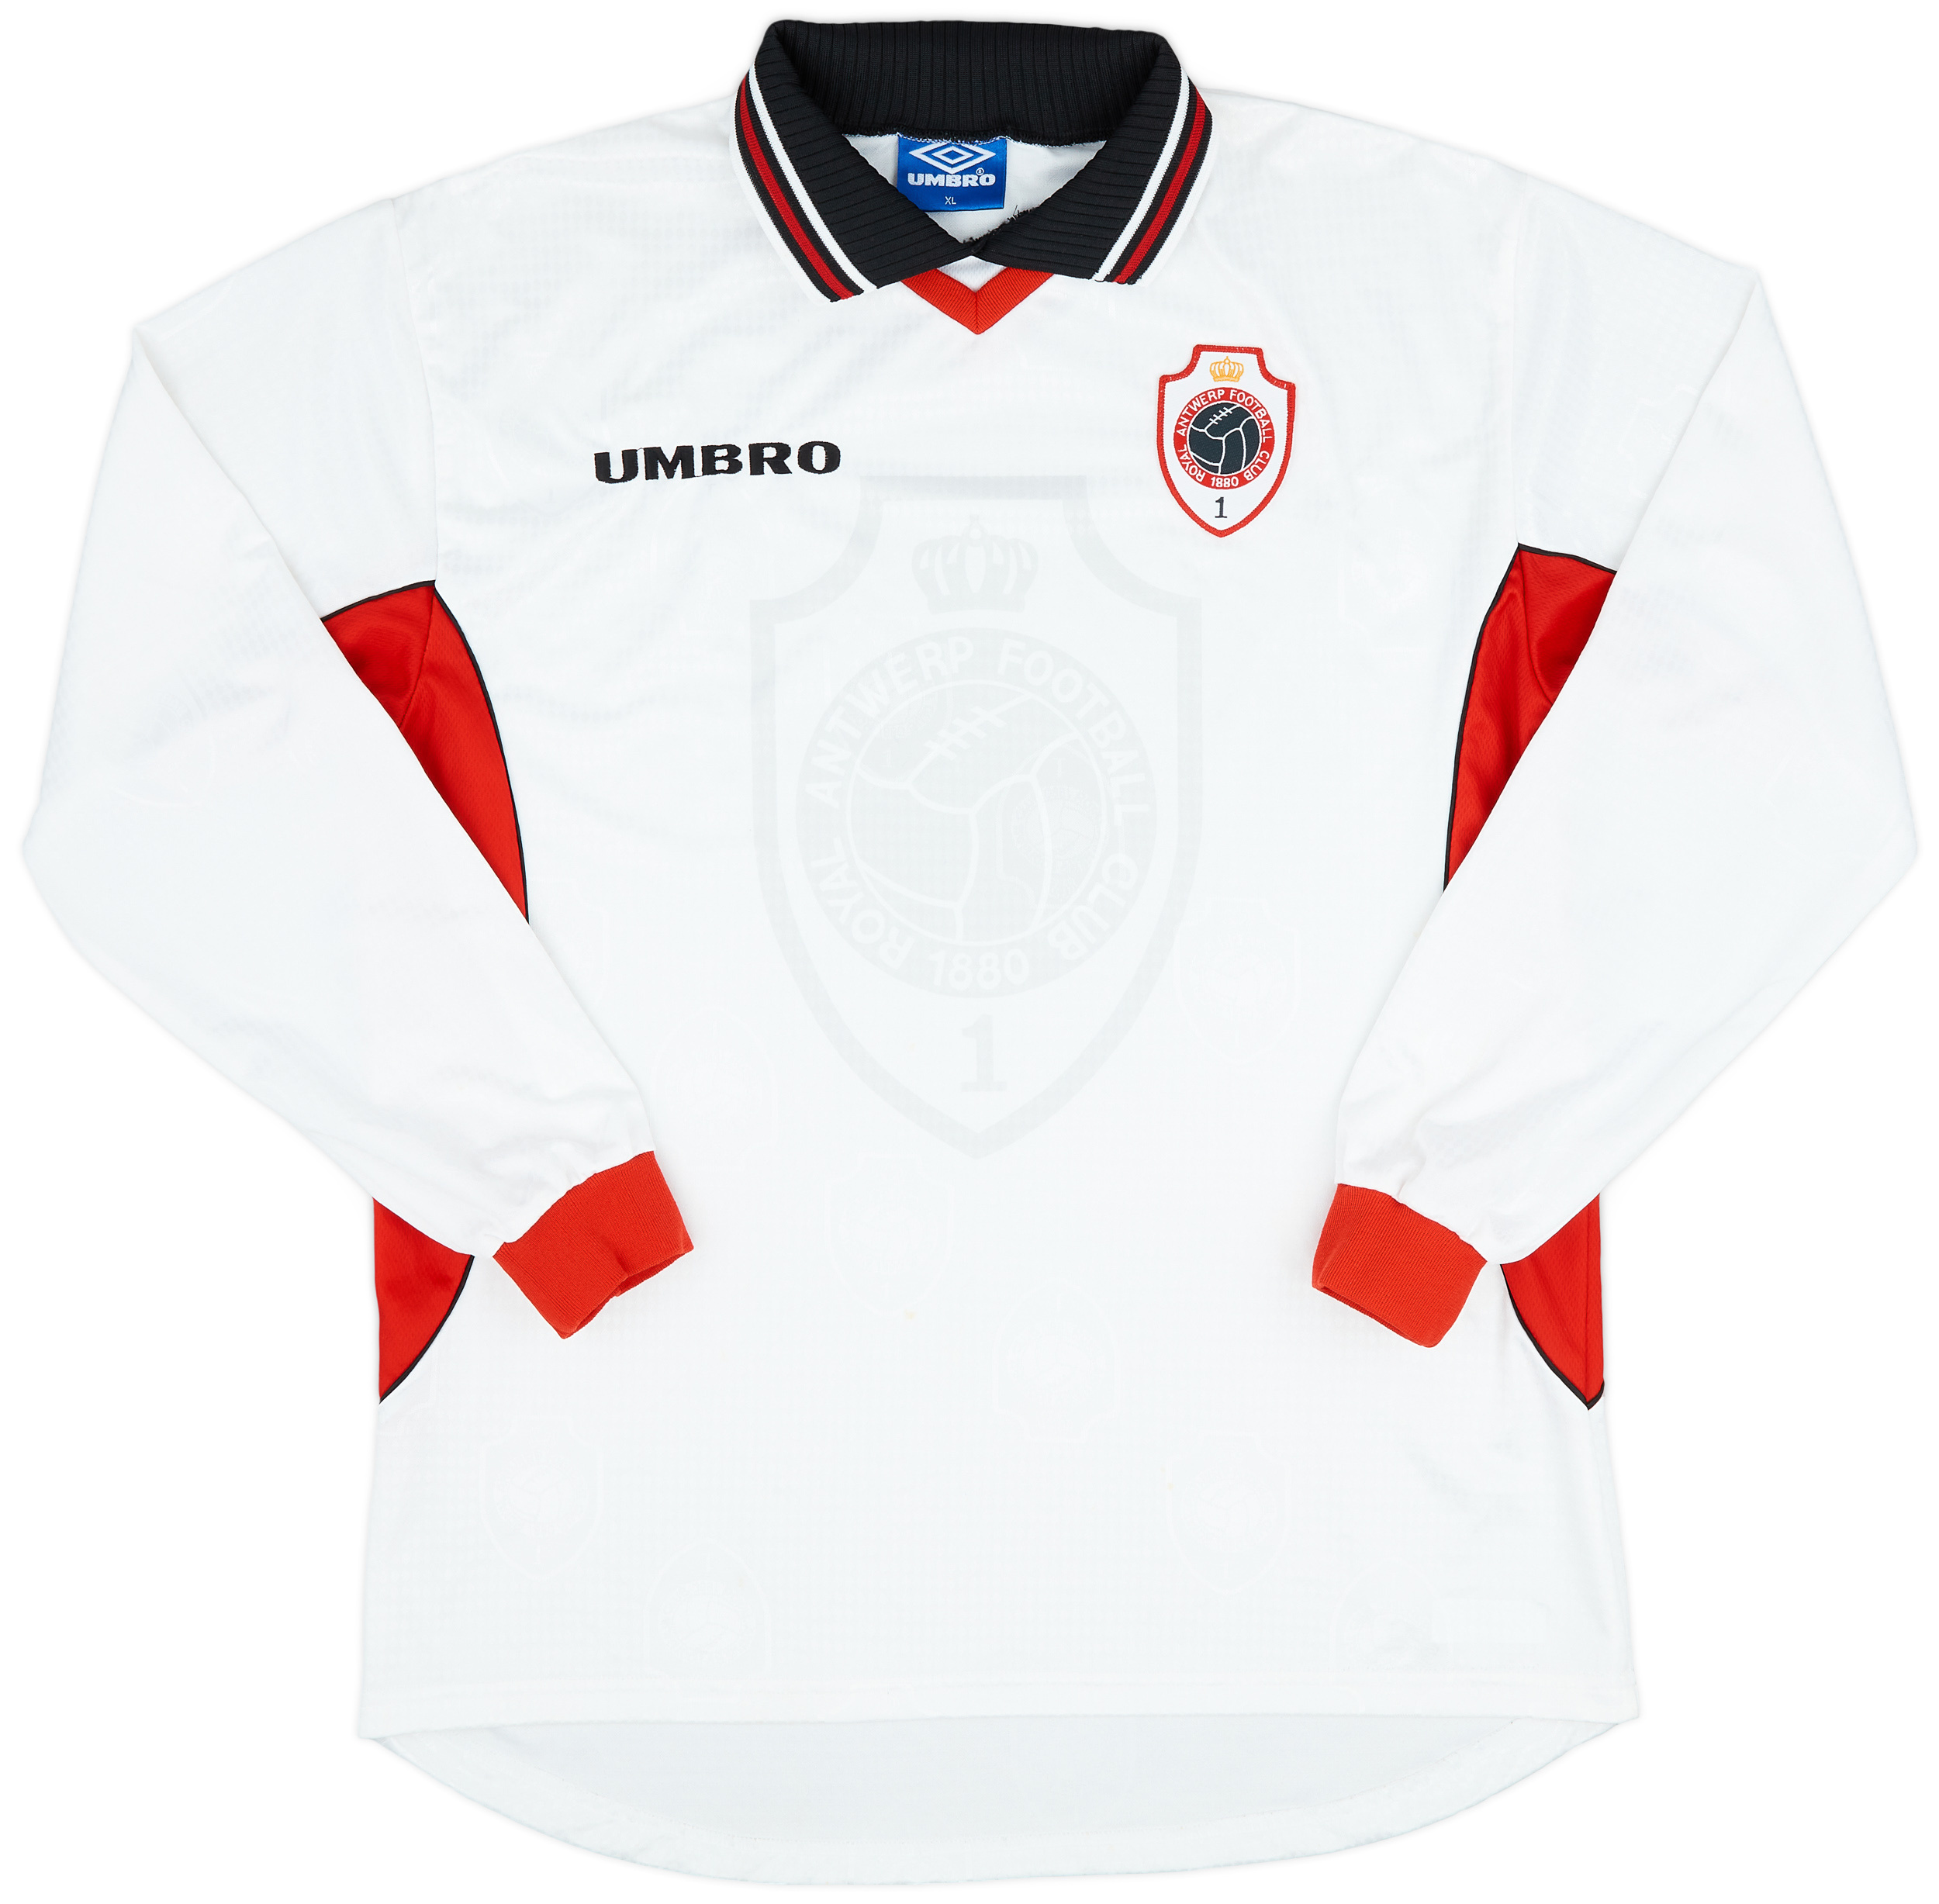 Retro Royal Antwerp Football Club Shirt